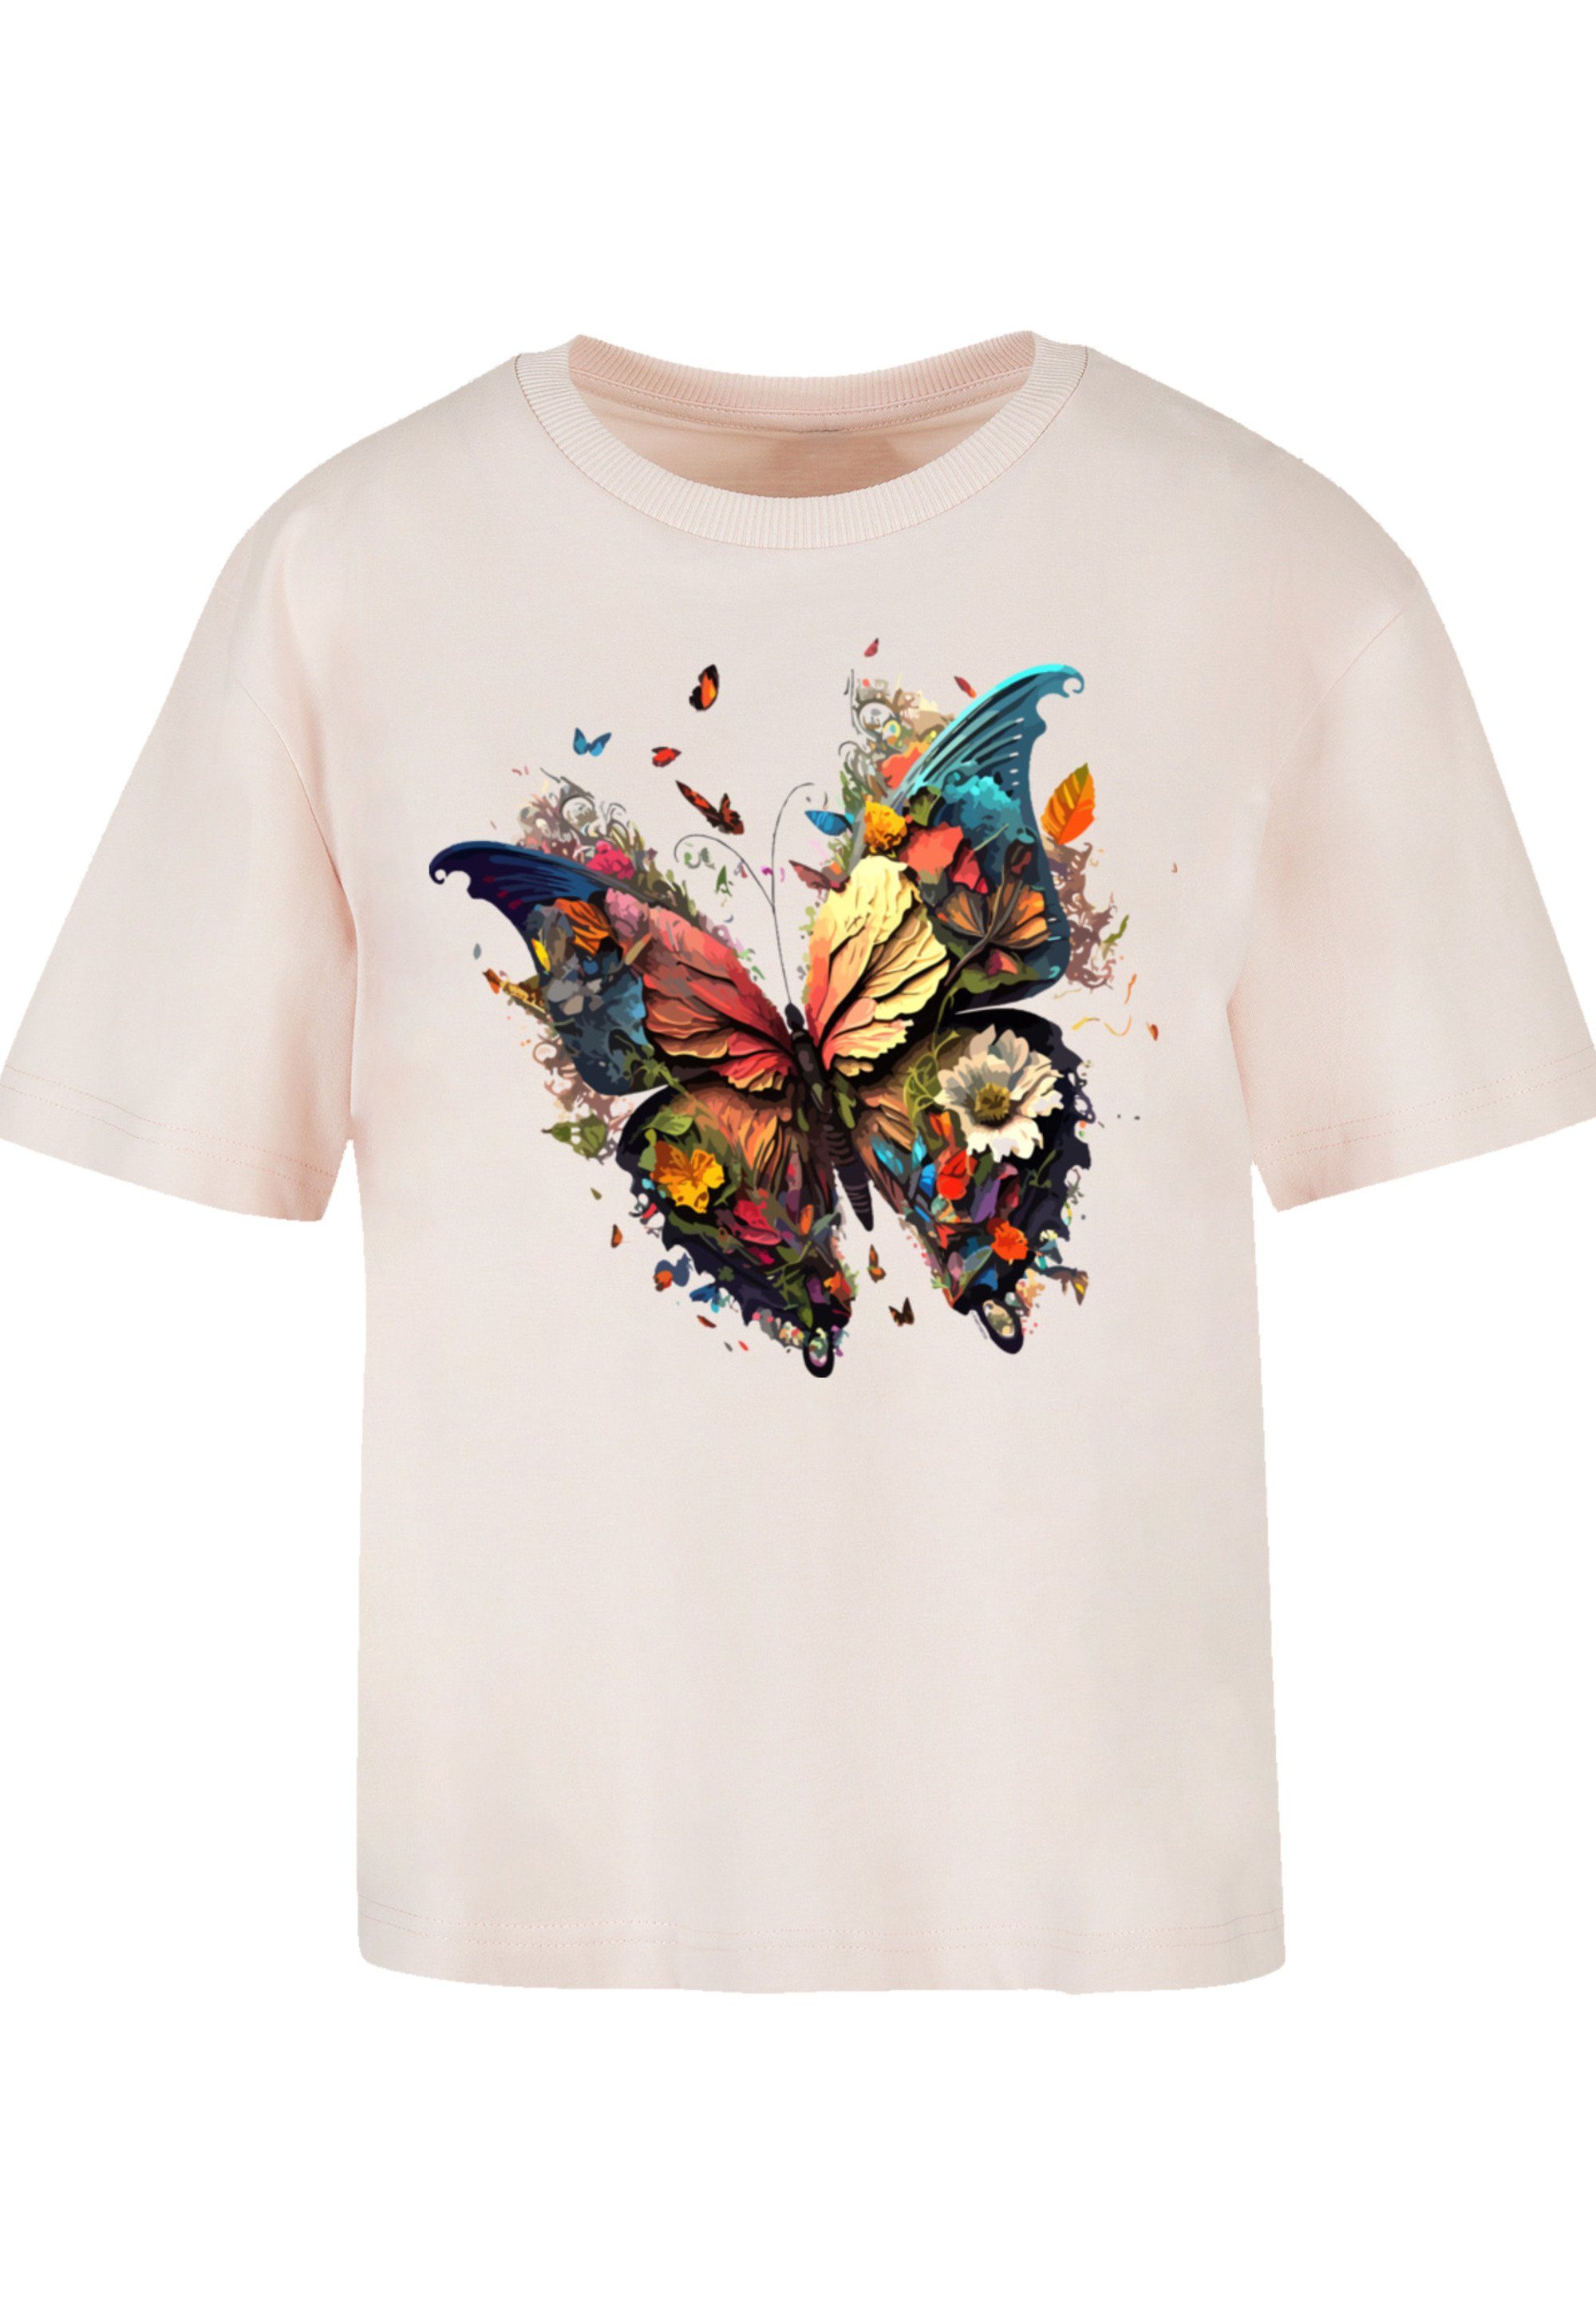 F4NT4STIC Gerippter T-Shirt Rundhalsausschnitt Print, Schmetterling für Magic stylischen Look